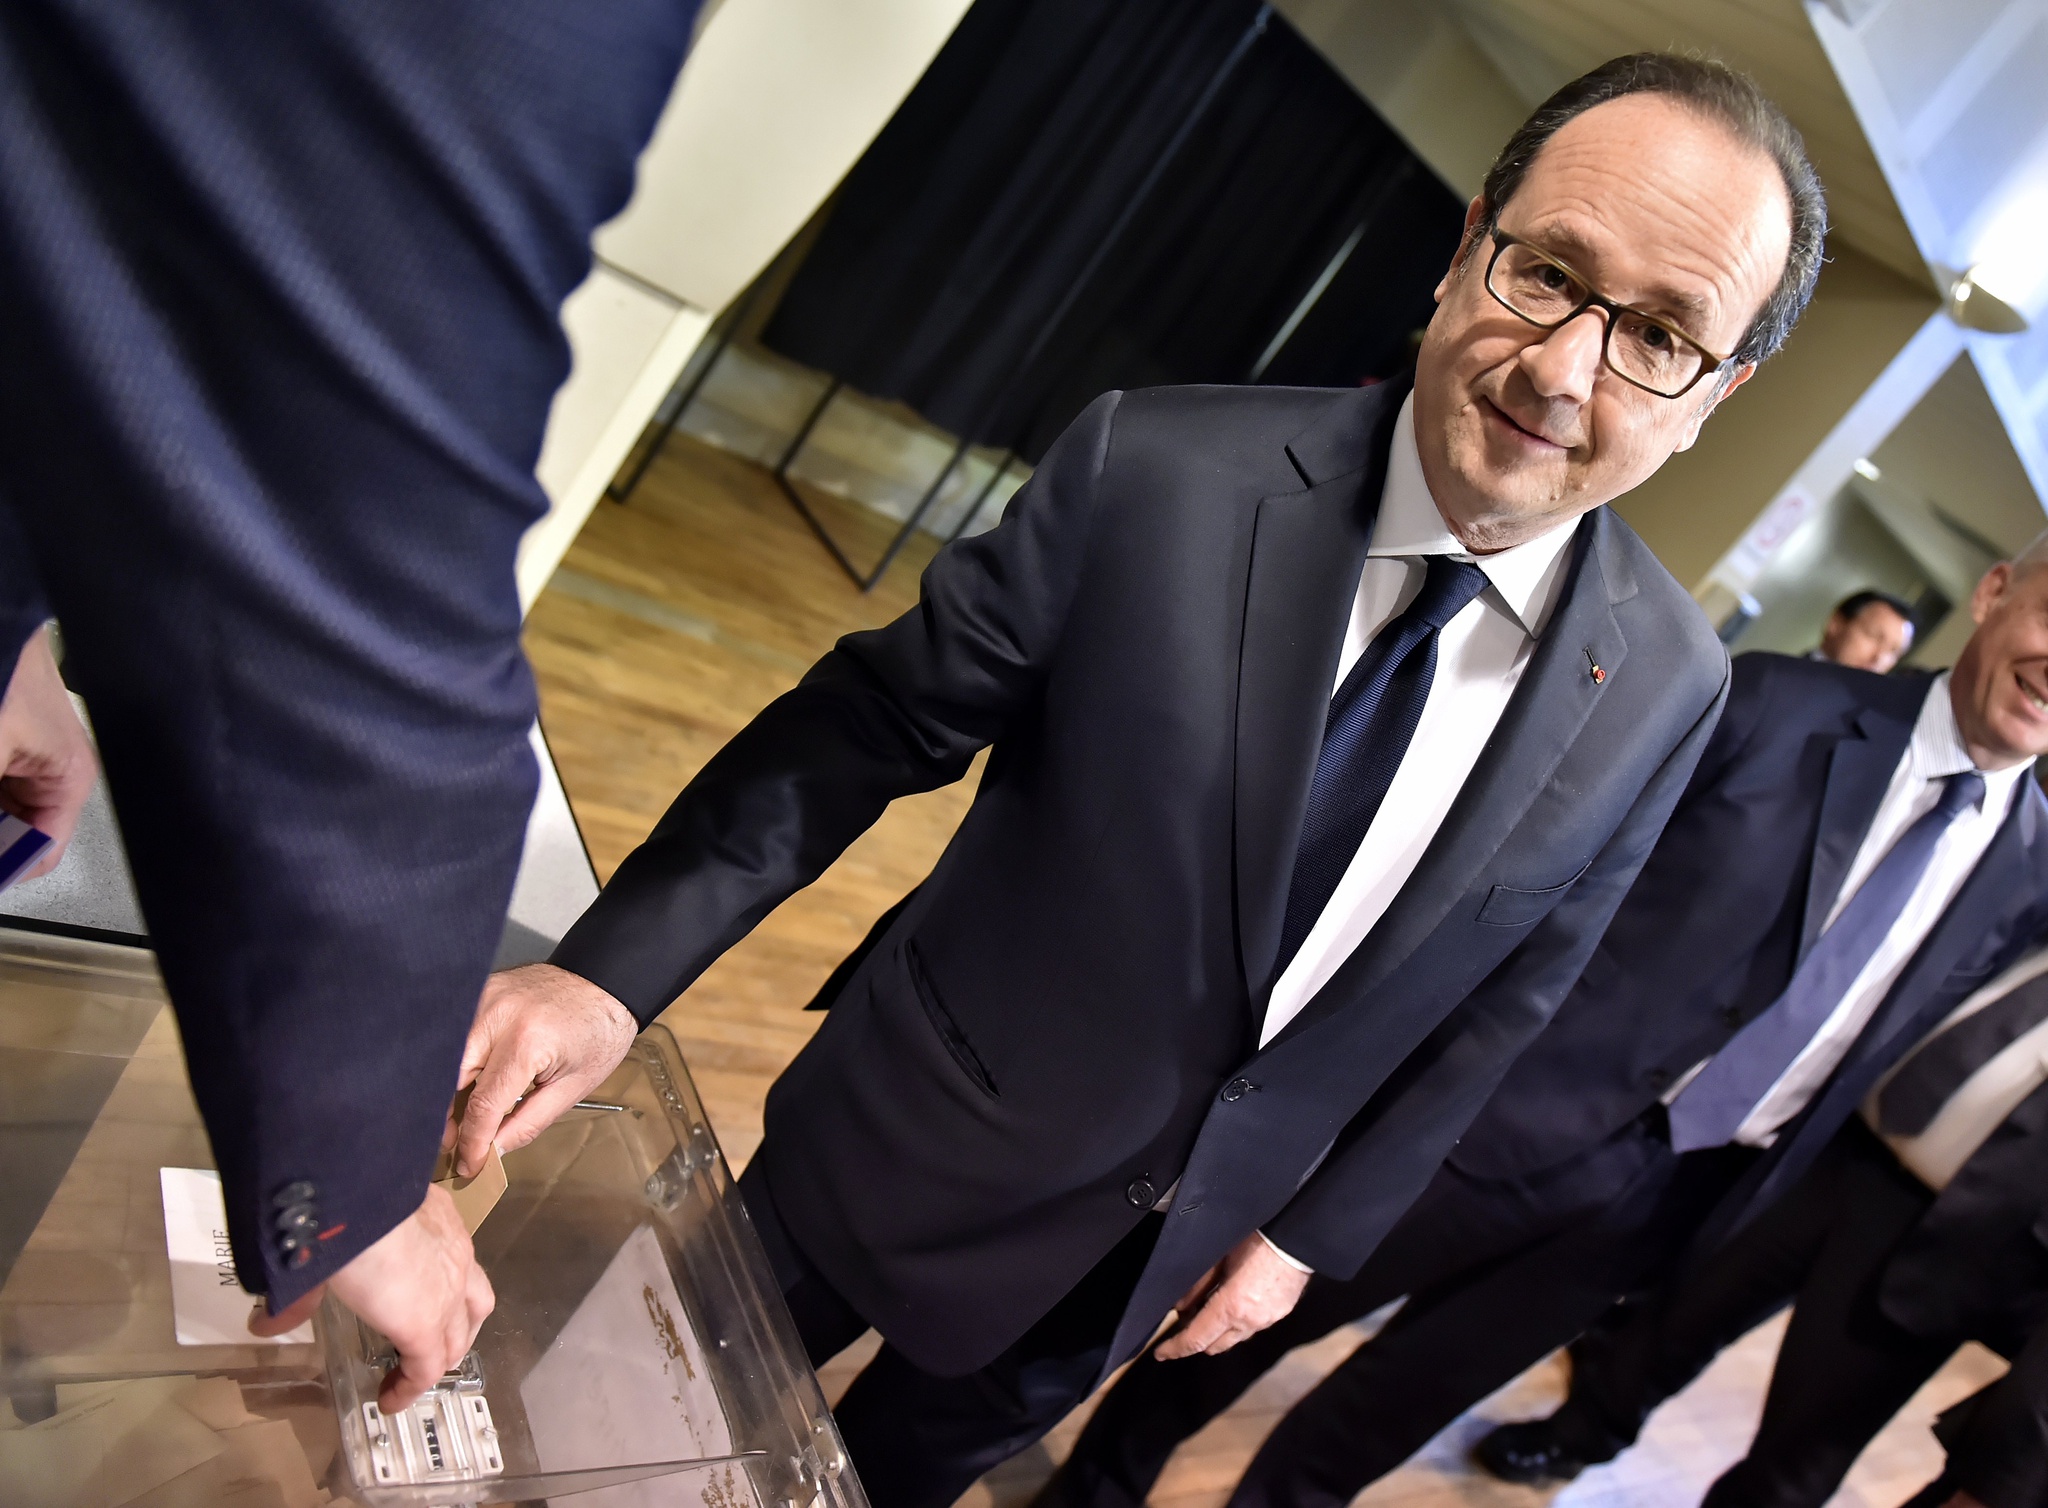 Hollande apparaît dans la campagne des socialistes qui ne soutiennent pas Mélenchon |  Élections en France